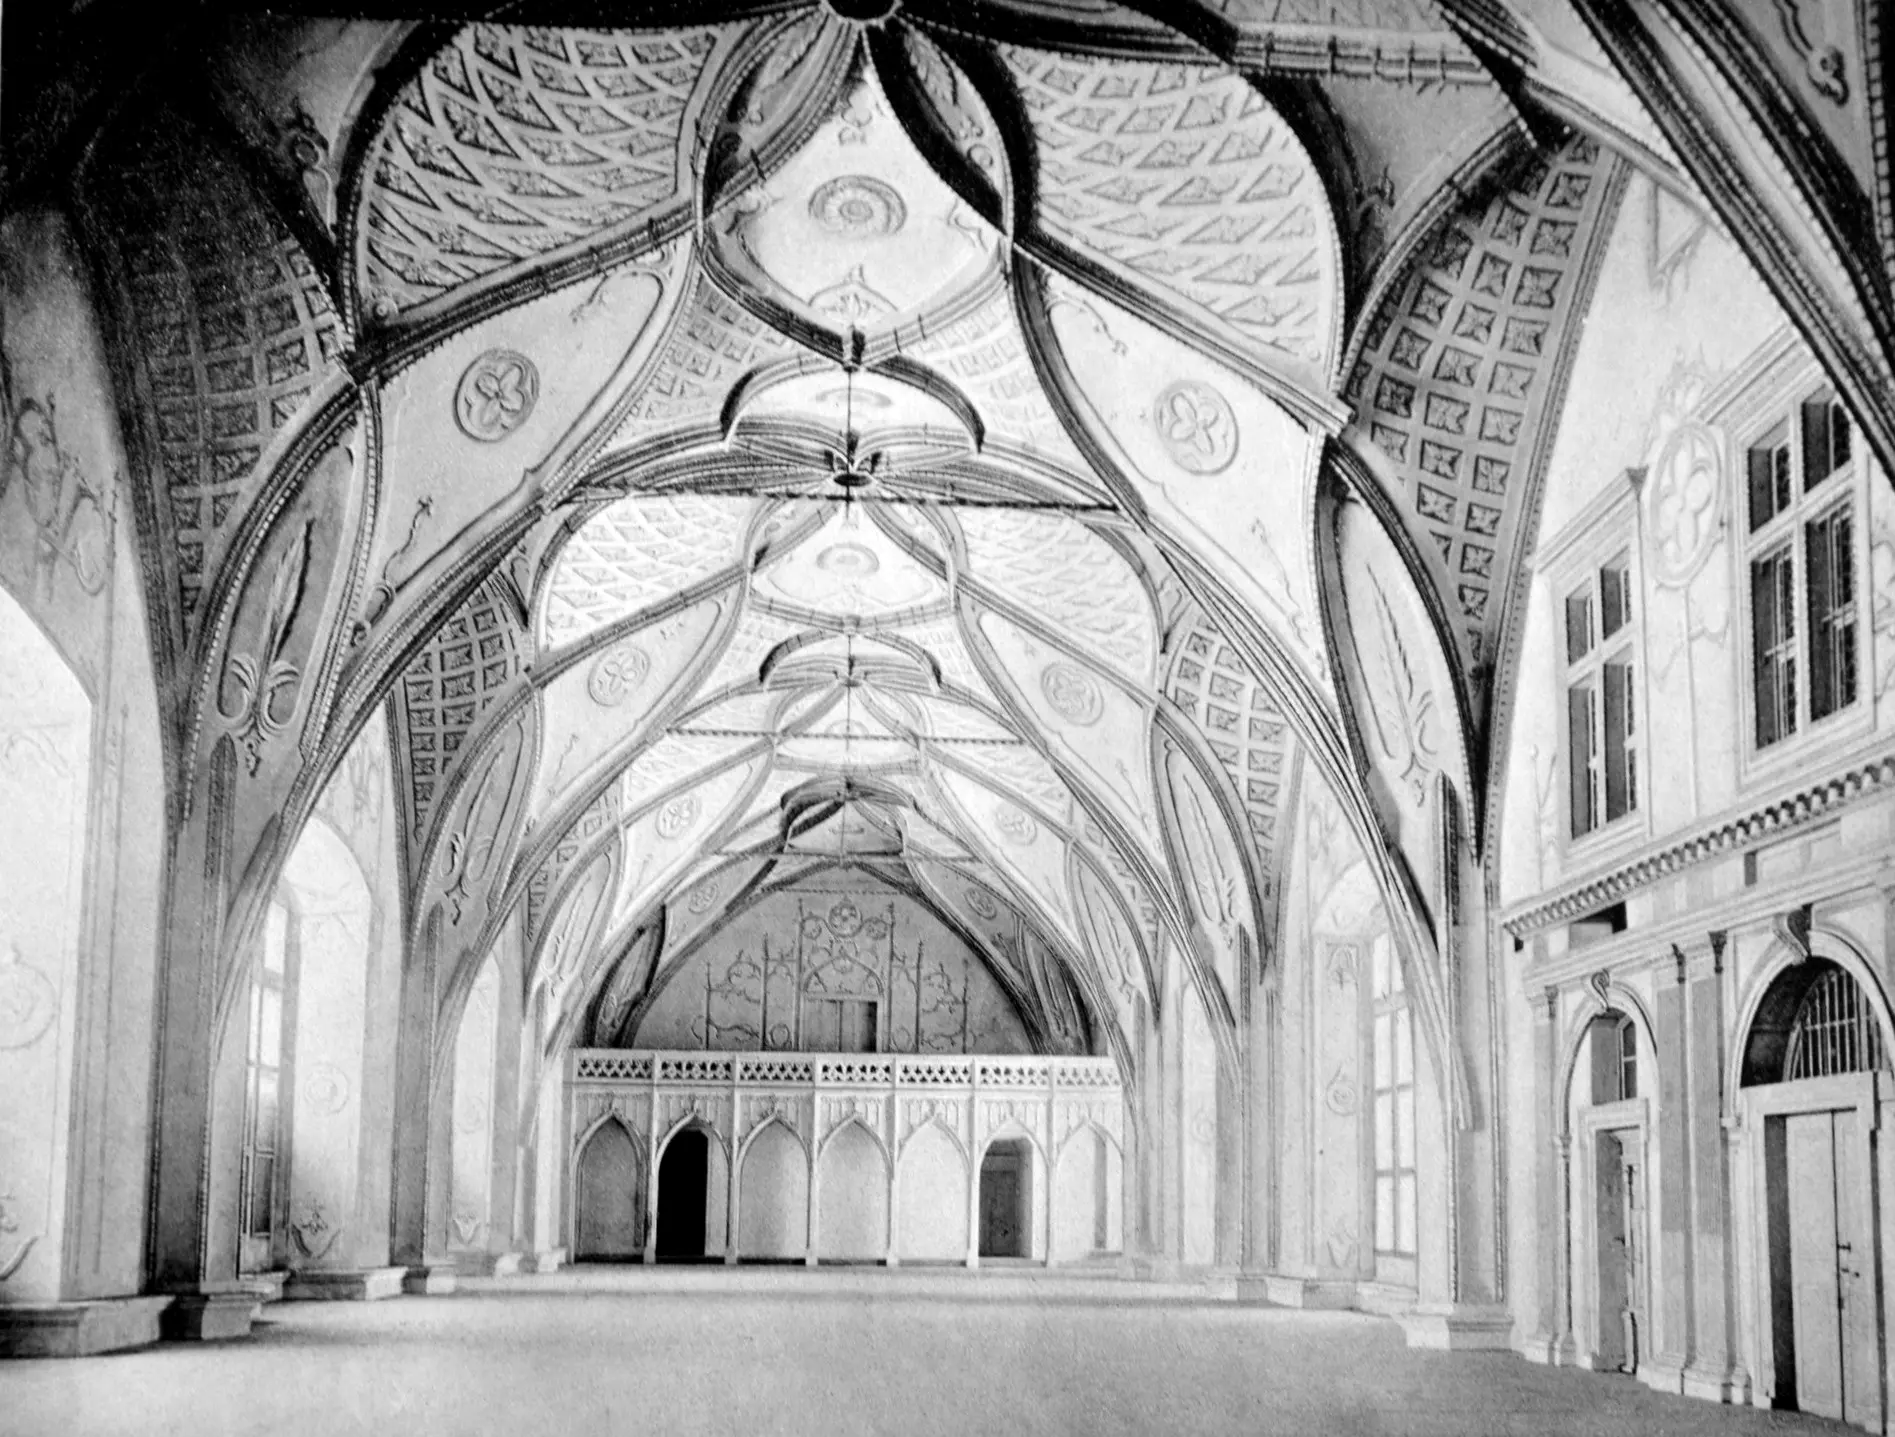 Vladislavský sál v 19. století ještě s vymalovanými stropy